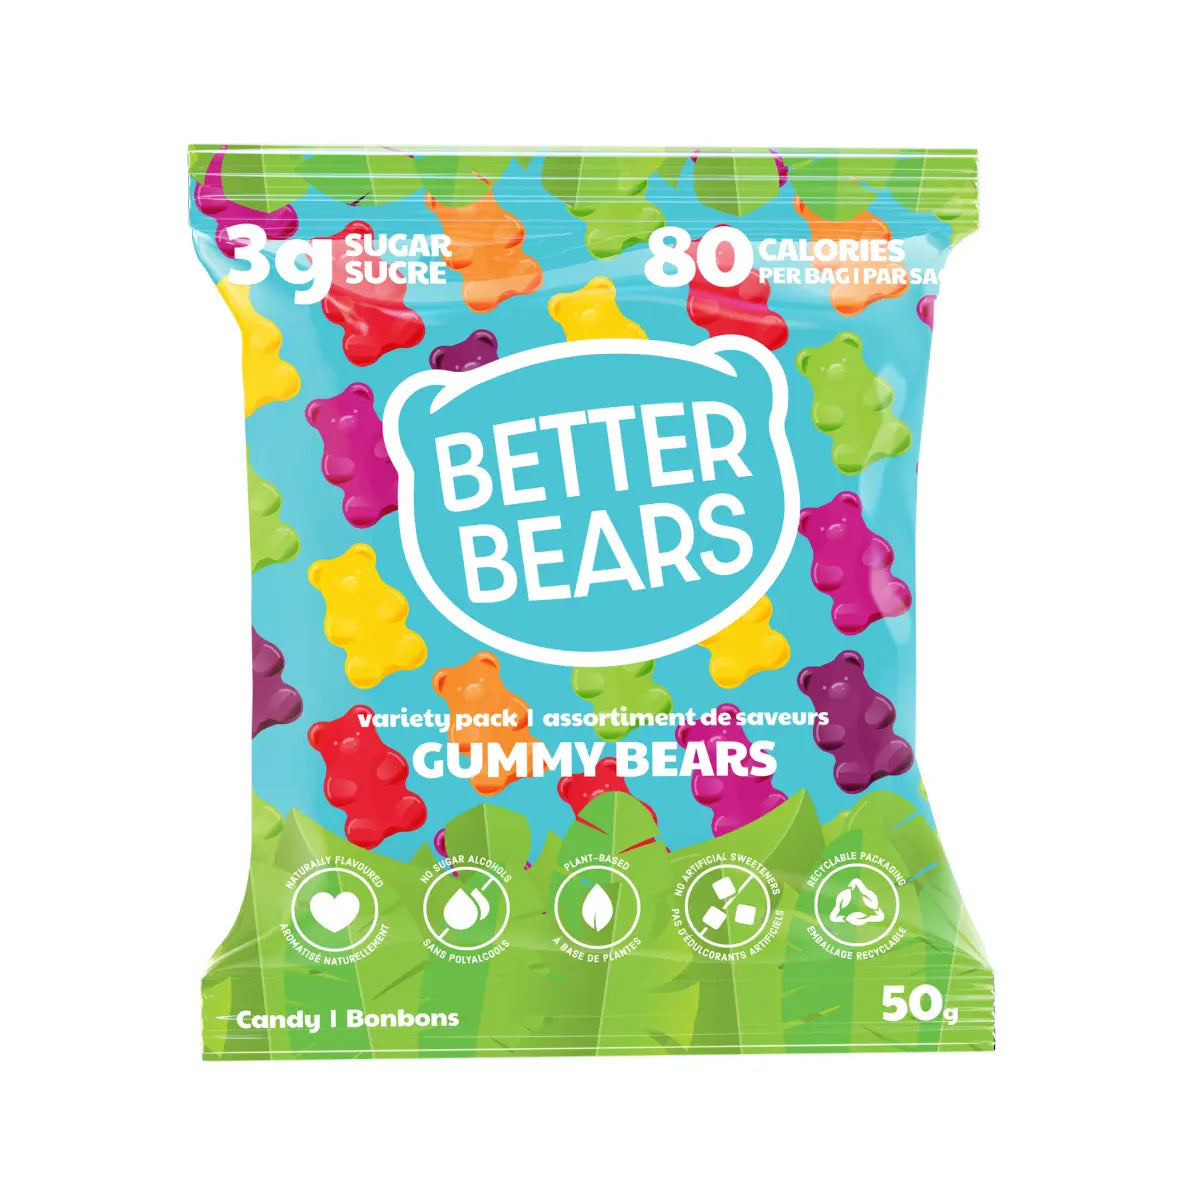 Better Bears Low Sugar Vegan Gummies (1 bag)